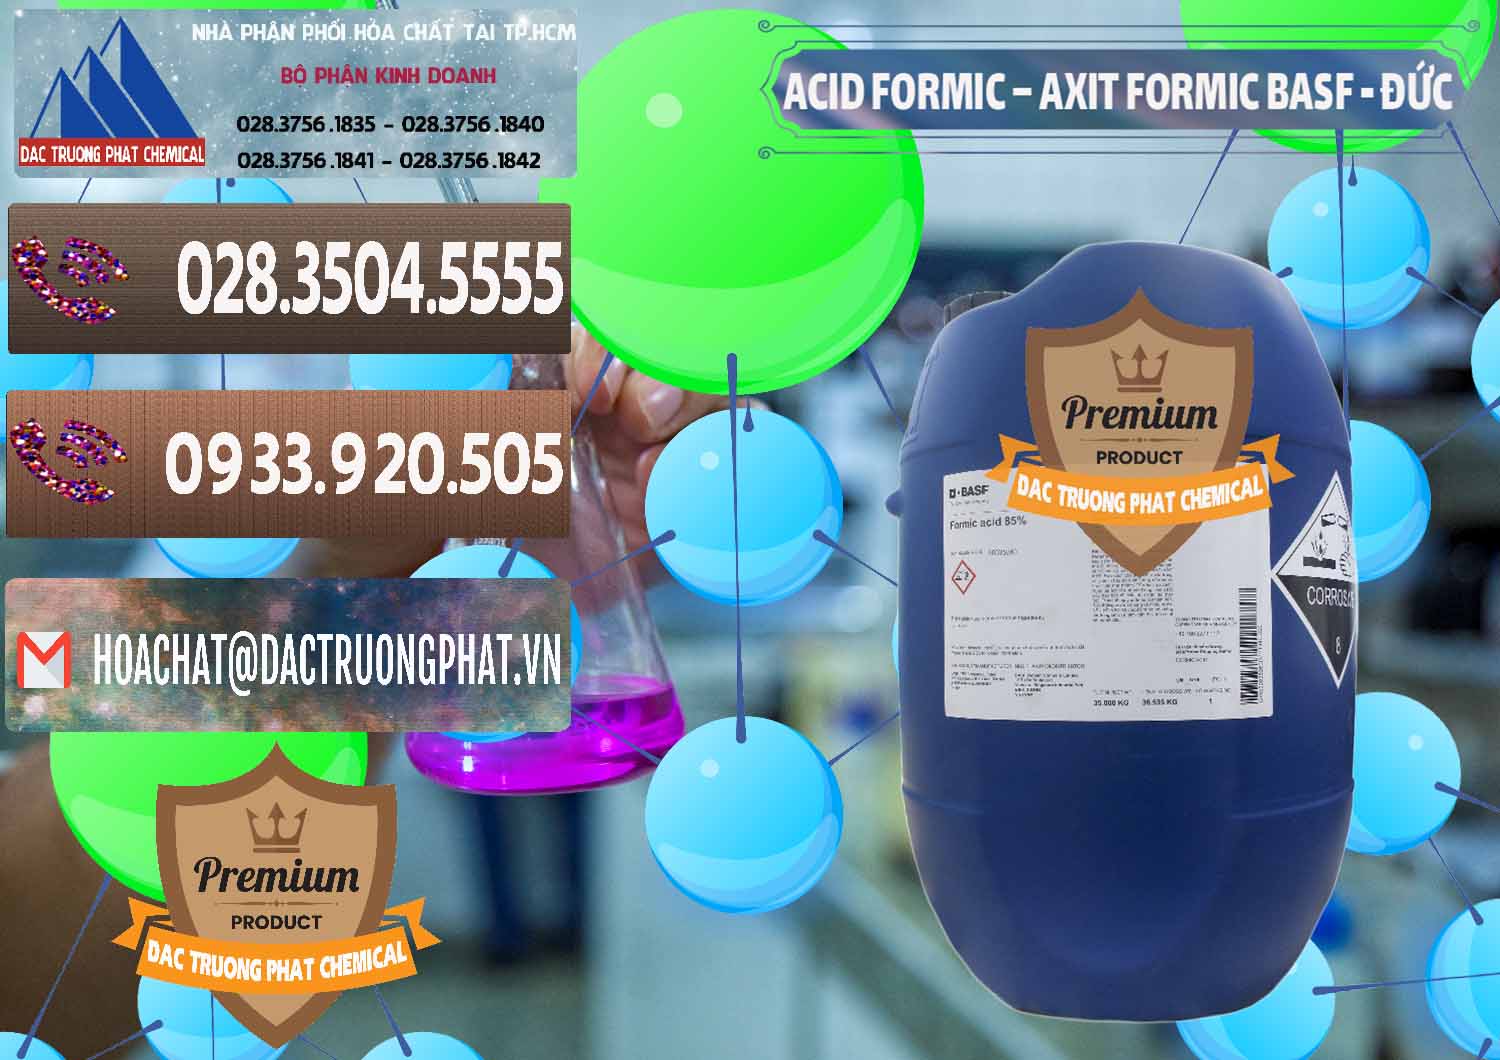 Cty chuyên nhập khẩu ( bán ) Acid Formic - Axit Formic BASF Đức Germany - 0028 - Nhà cung cấp và bán hóa chất tại TP.HCM - hoachatviet.net